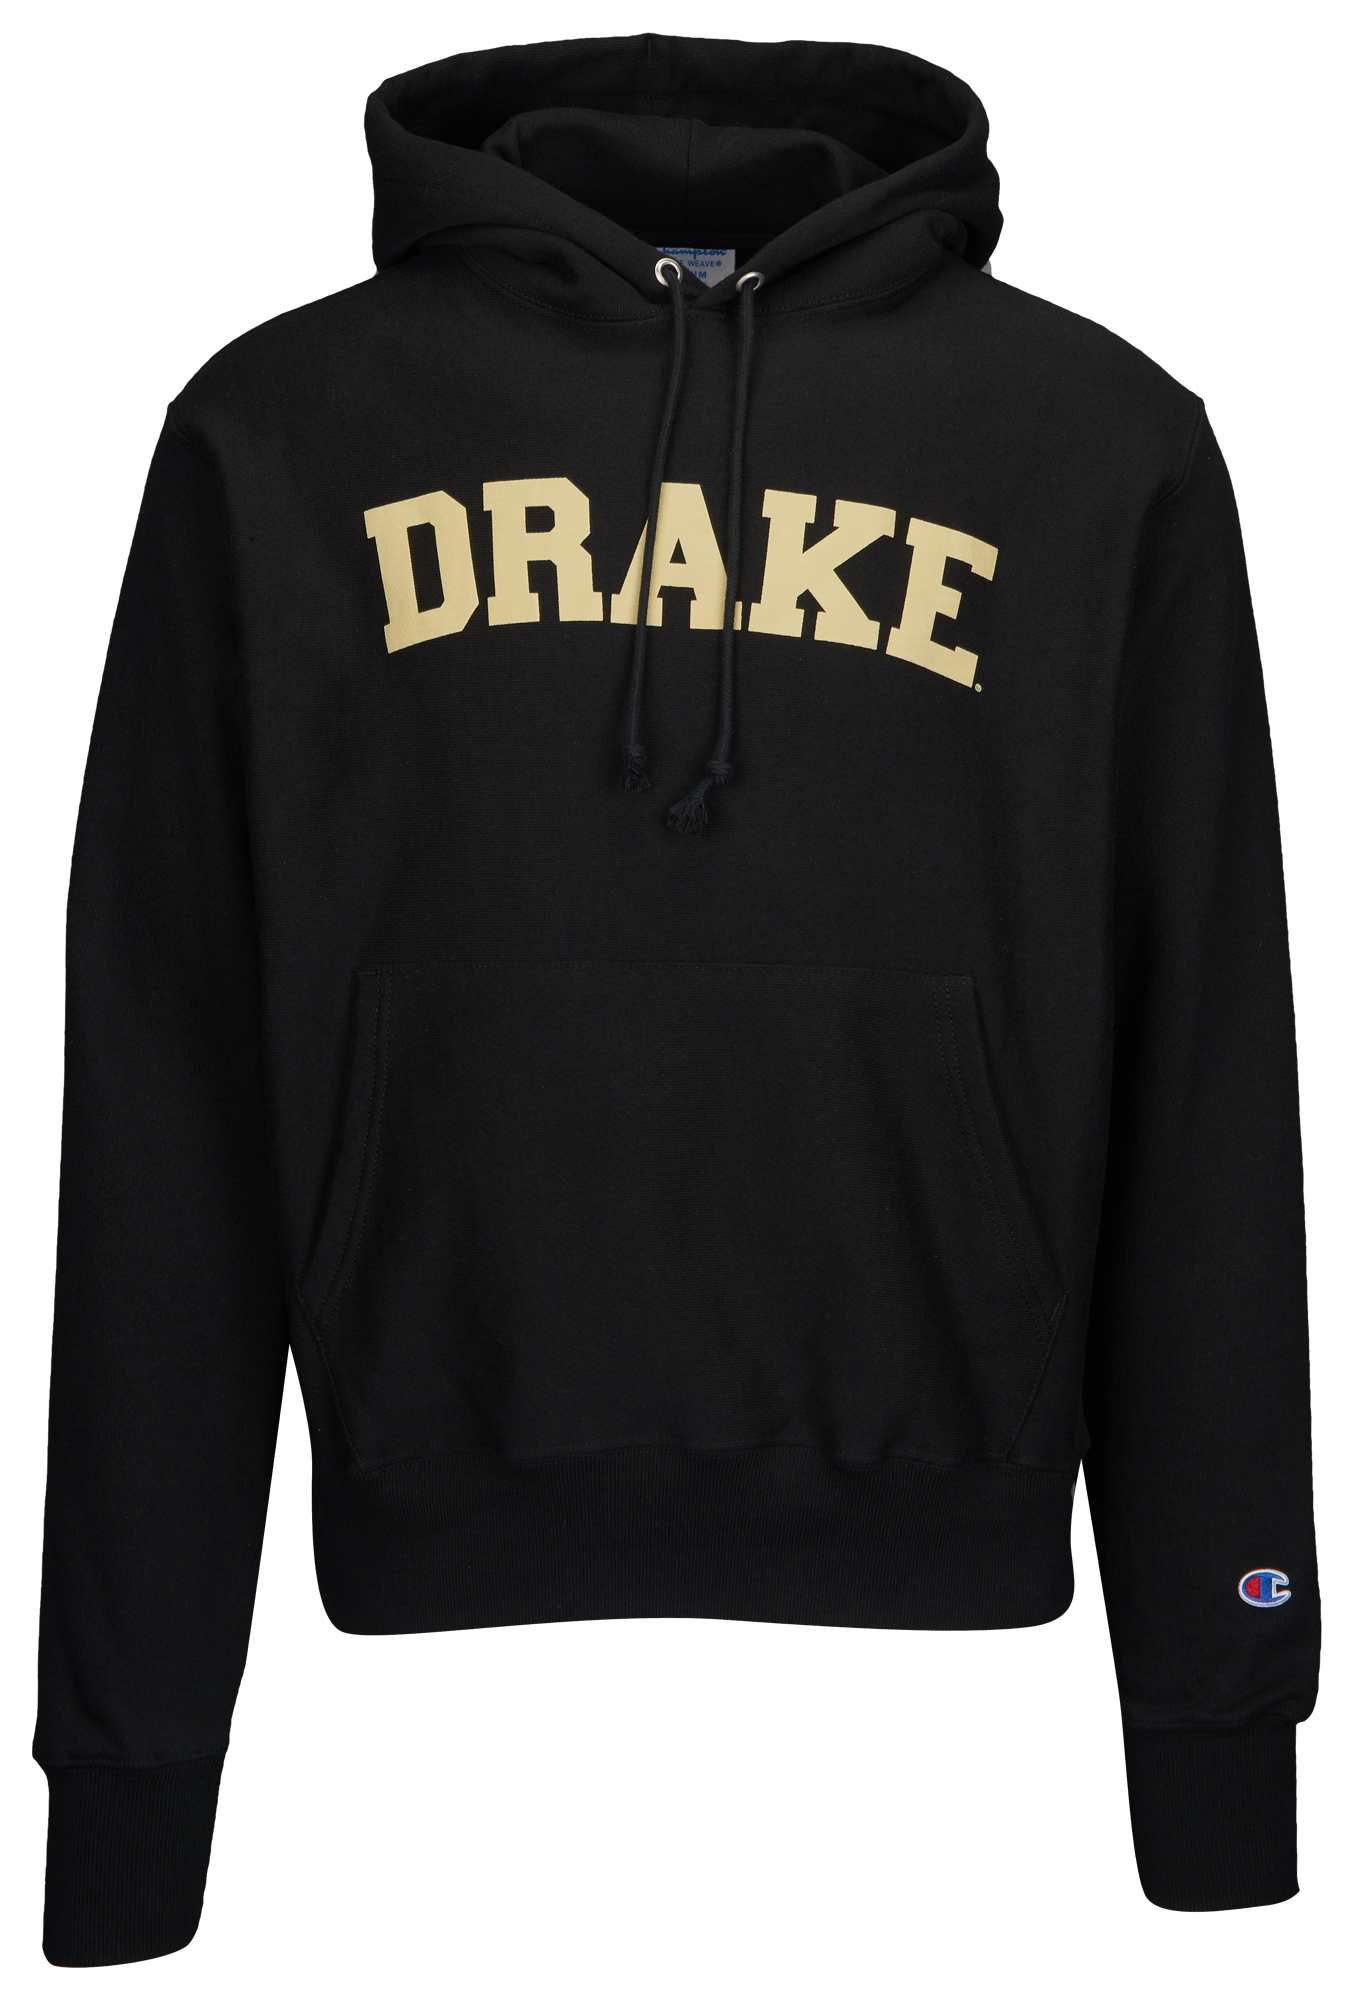 drake champion hoodie